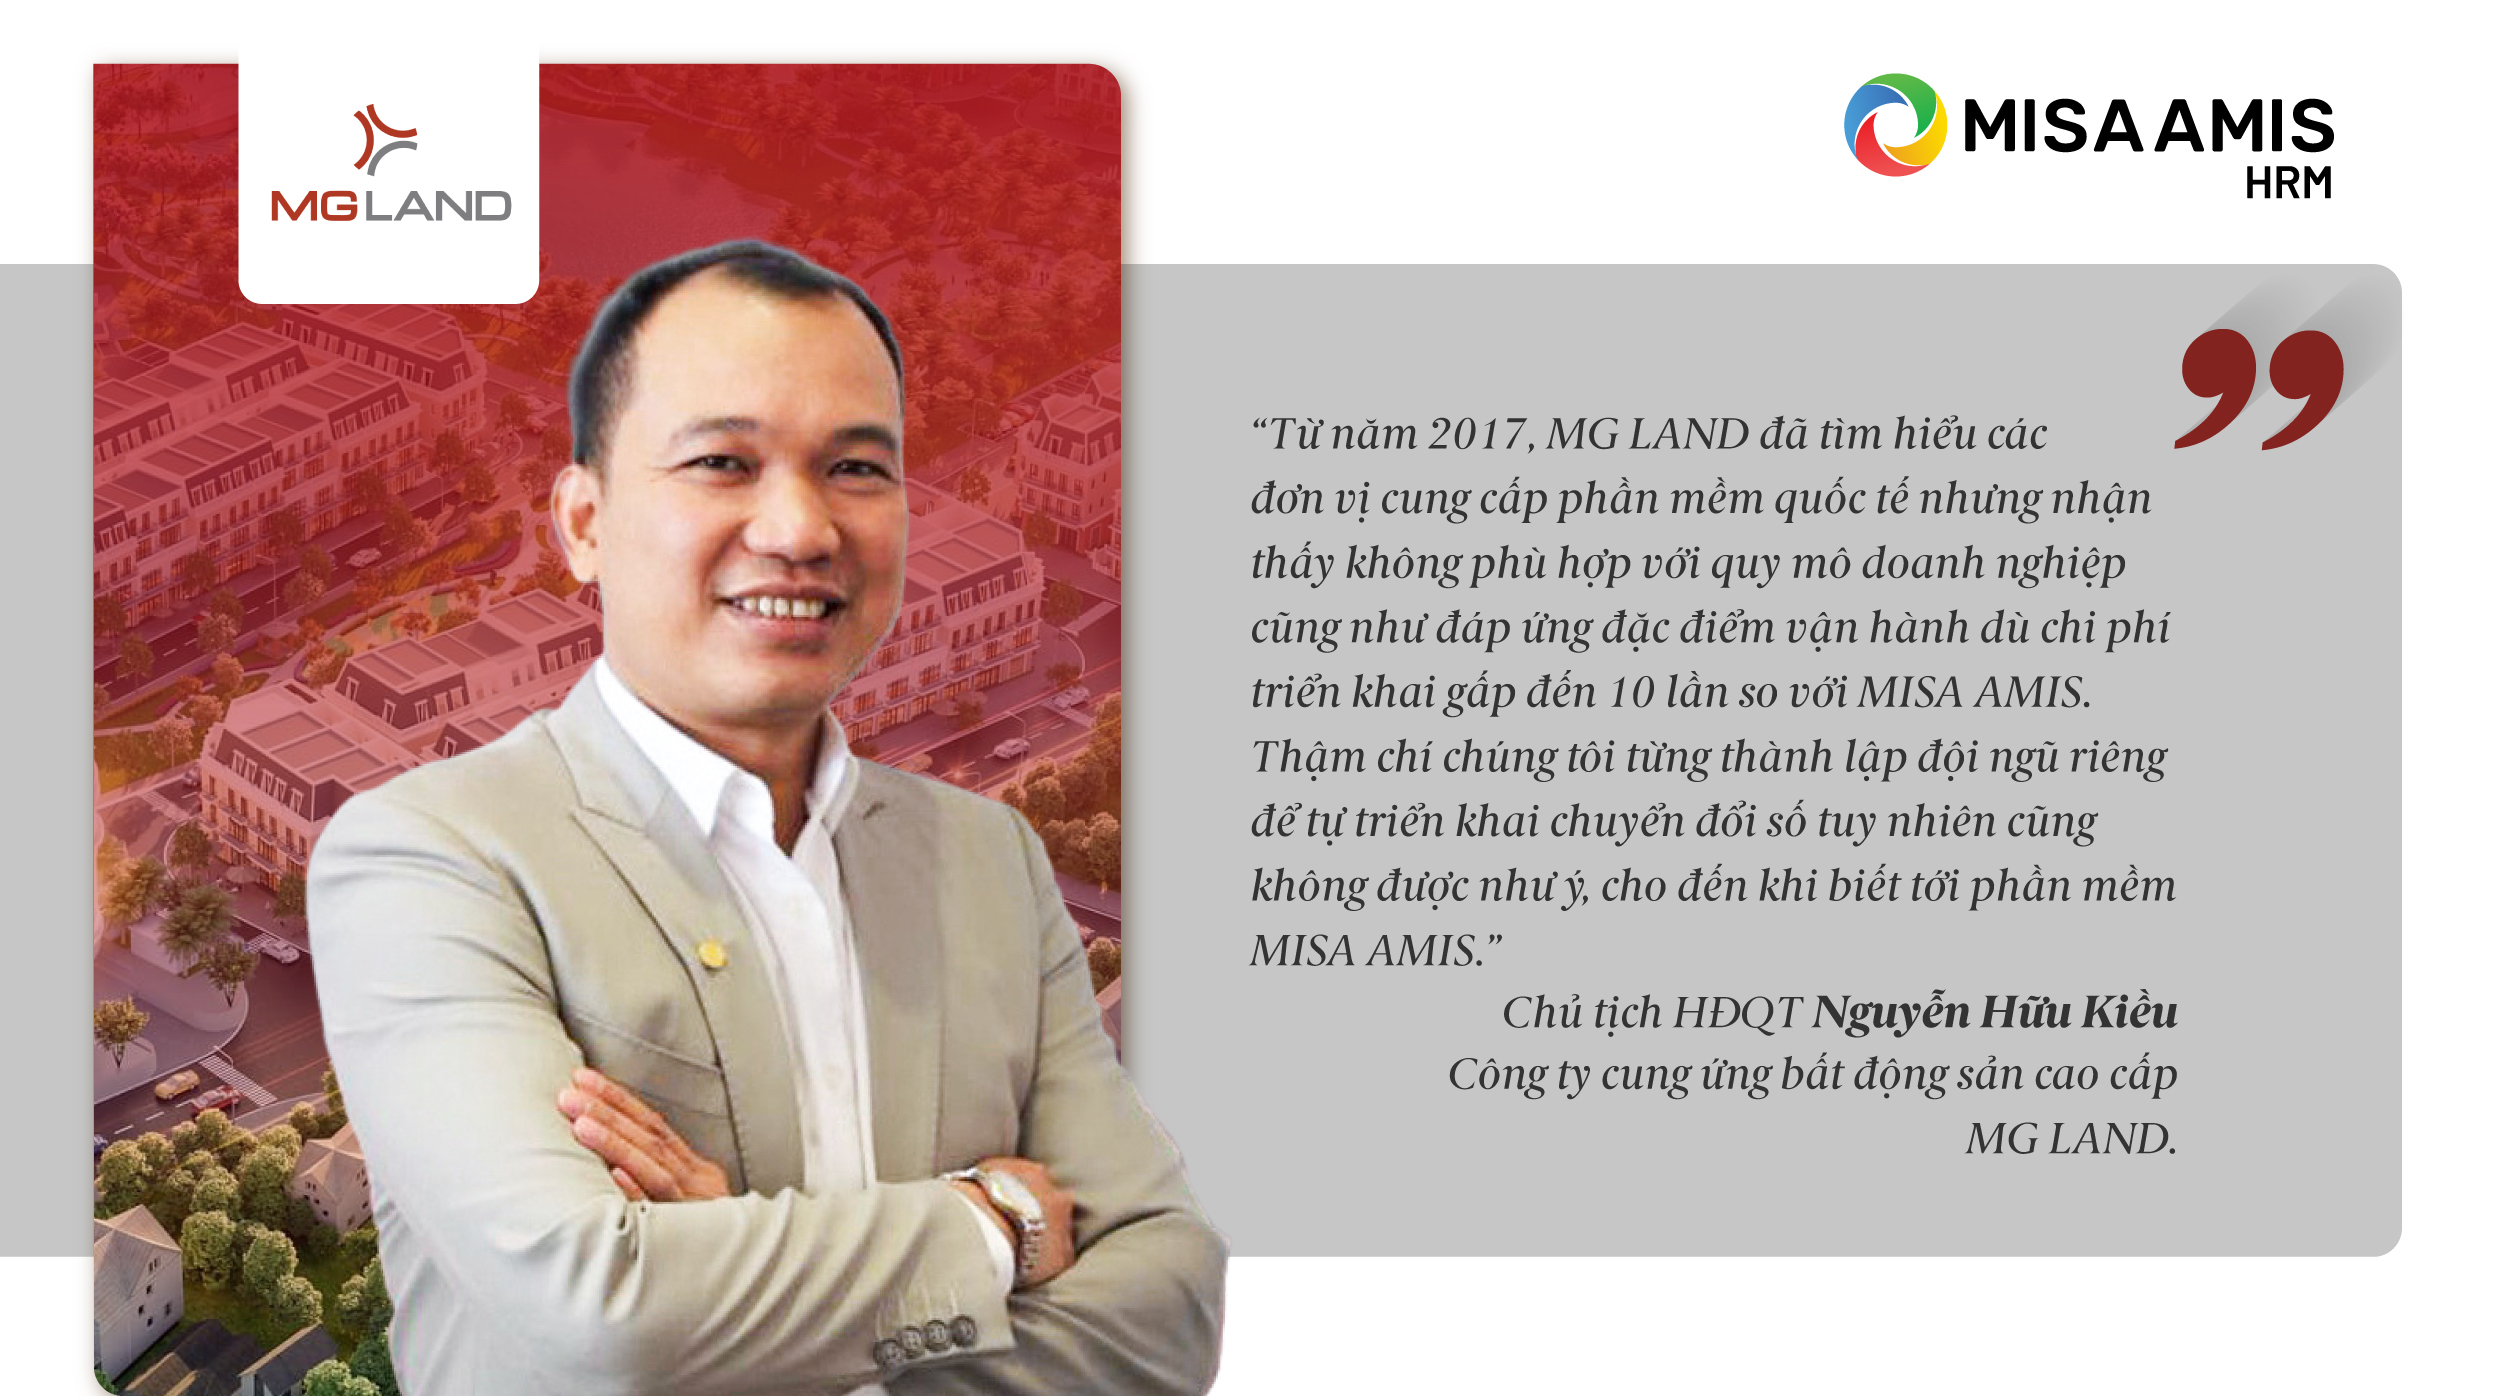 Chia sẻ về chiến dịch chuyển đổi số tại Công ty MG LAND - Doanh nghiệp phân phối bất động sản cao cấp nổi tiếng Việt Nam 